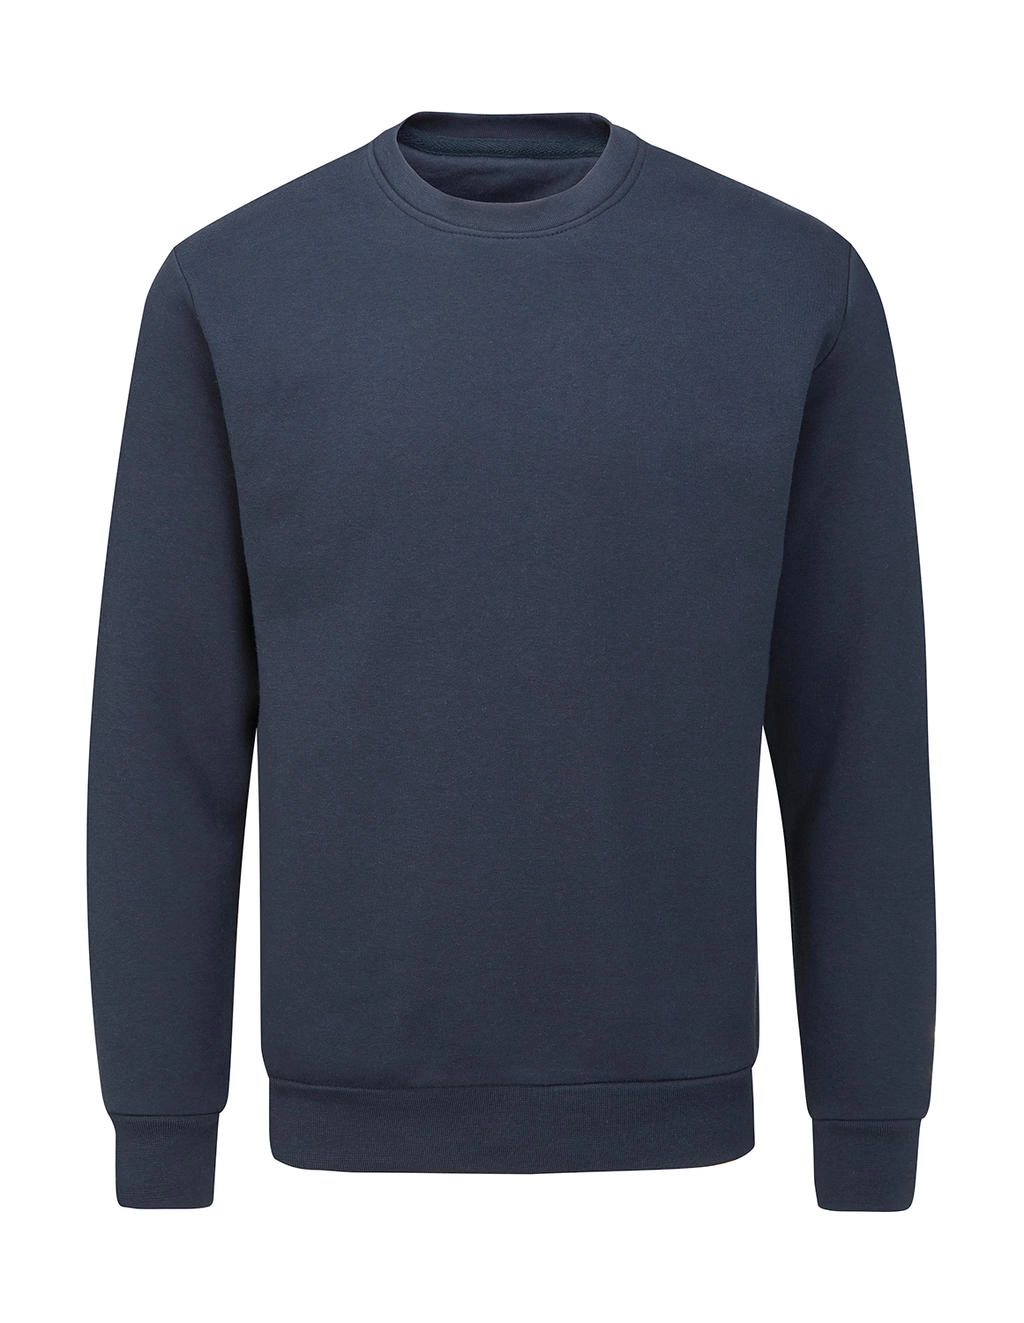 Essential Sweatshirt zum Besticken und Bedrucken in der Farbe Navy mit Ihren Logo, Schriftzug oder Motiv.